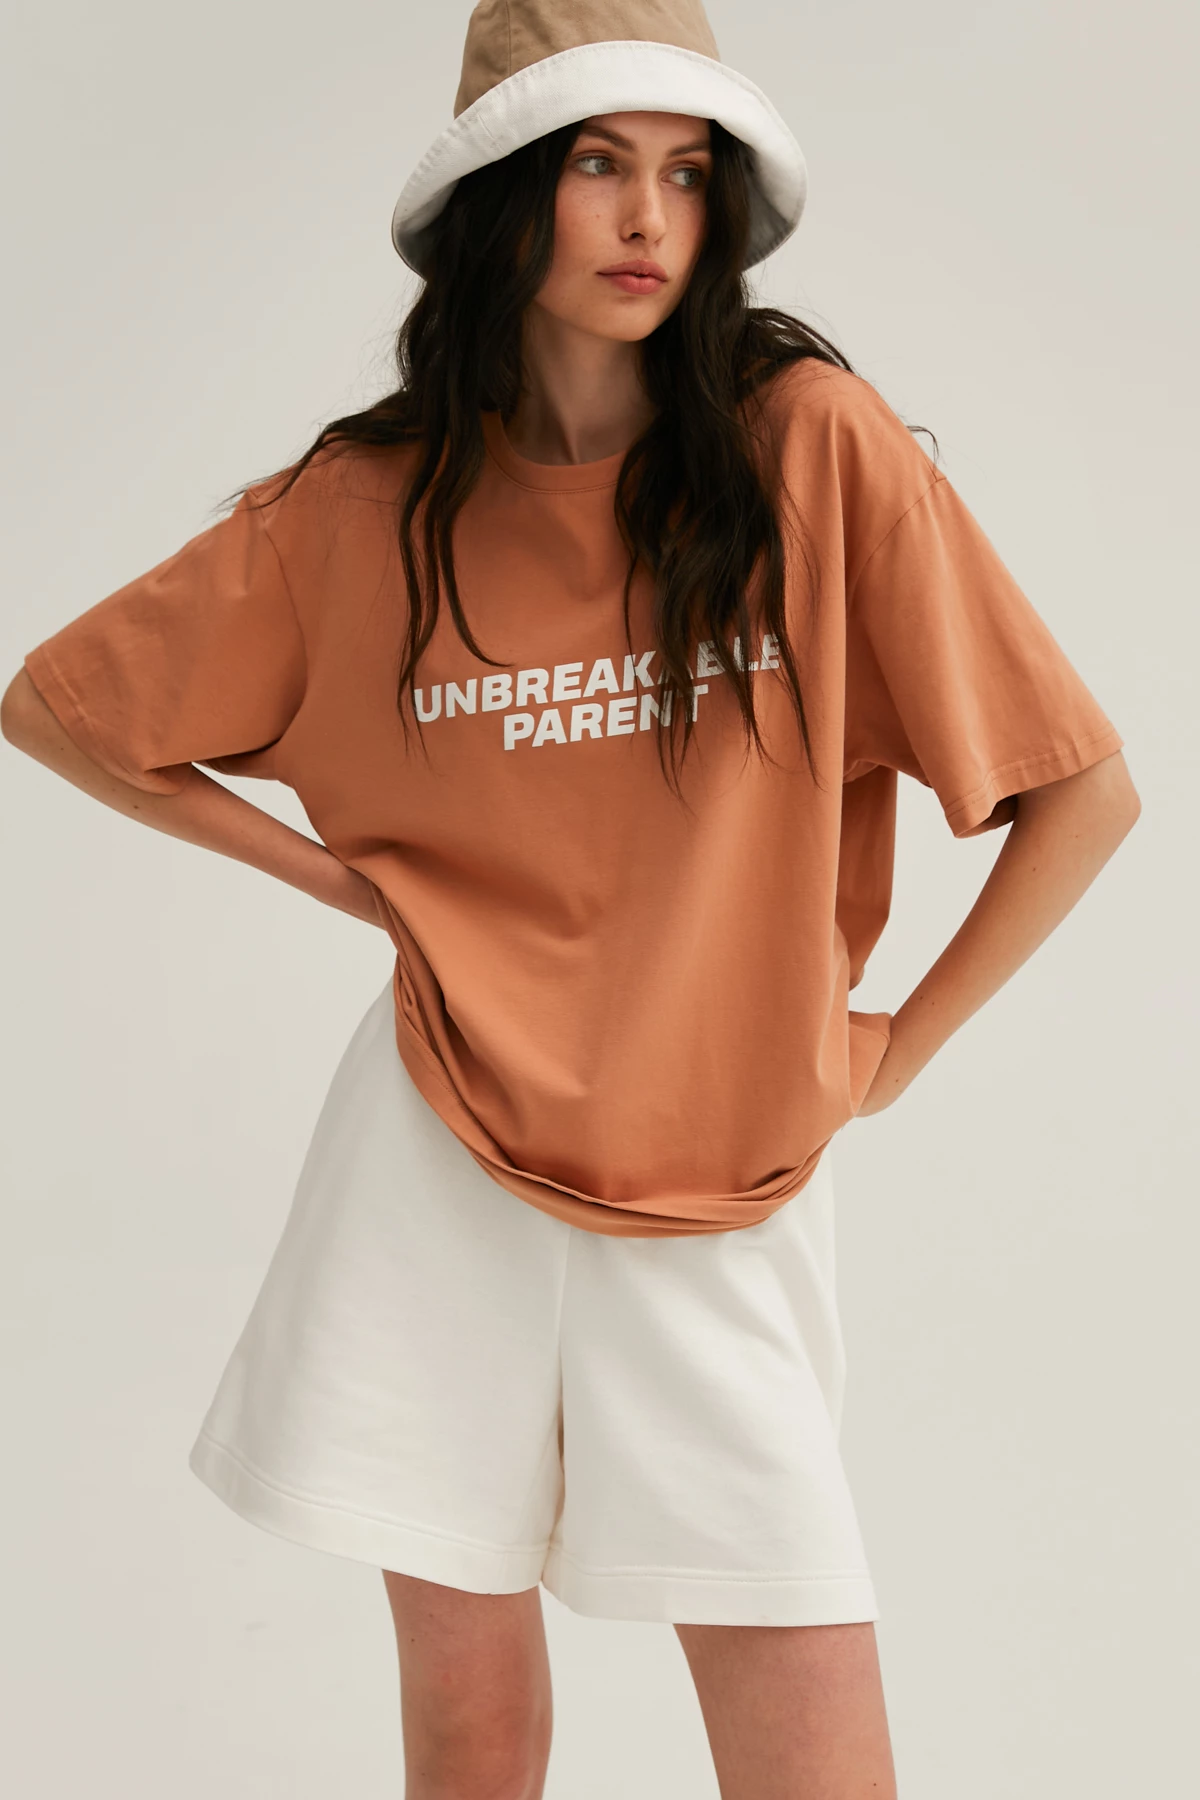 Карамельна унісекс-футболка з написом "Unbreakable parent" з трикотажу, фото 9